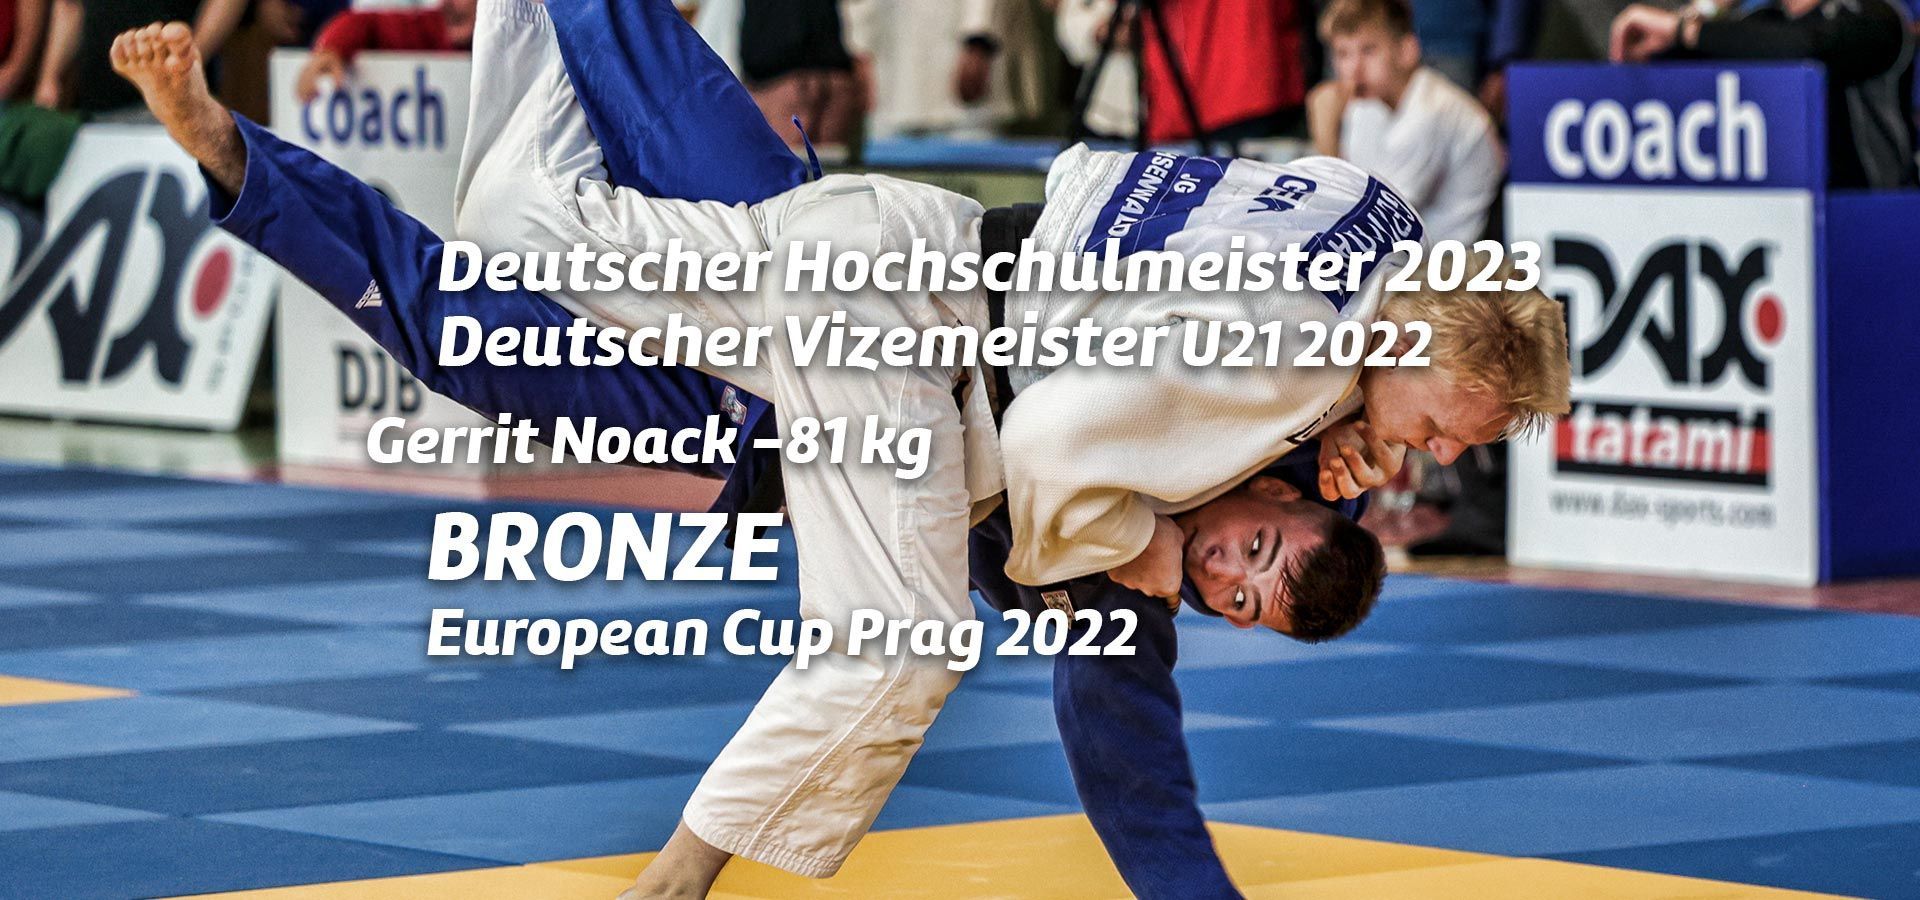 Gerrit Noack - Deutscher Hochschulmeister bis 81 kg 2023